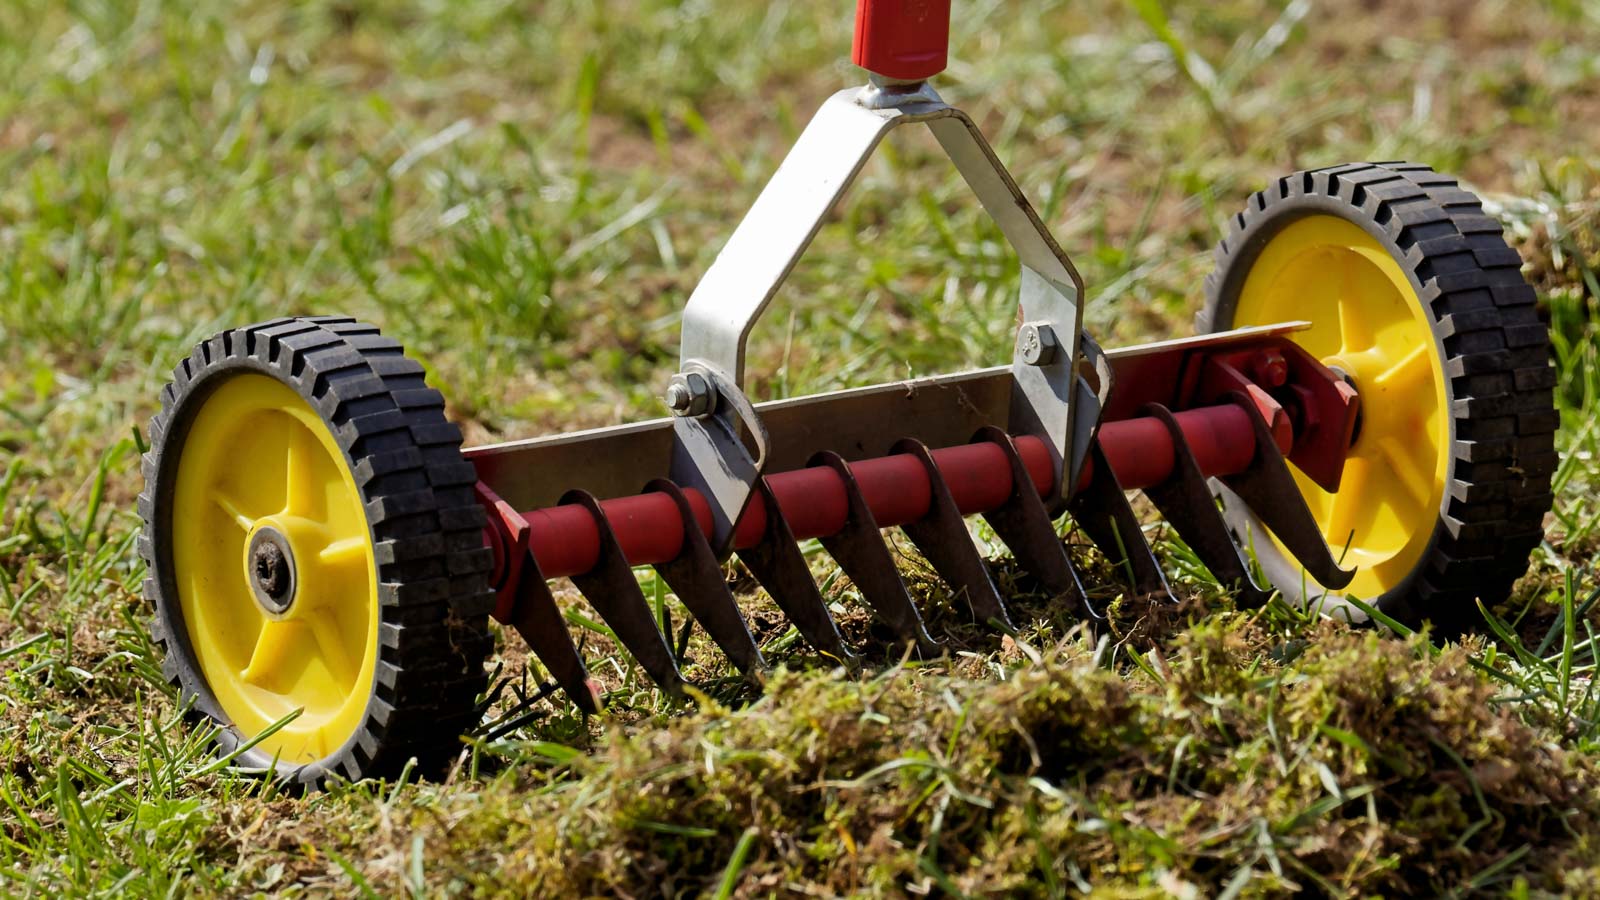 Nahaufnahme von einem Handvertikutierer, der auf dem Rasen steht. Dieses Geräte ist zum Vertikutieren kleiner Rasenflächen geeignet.